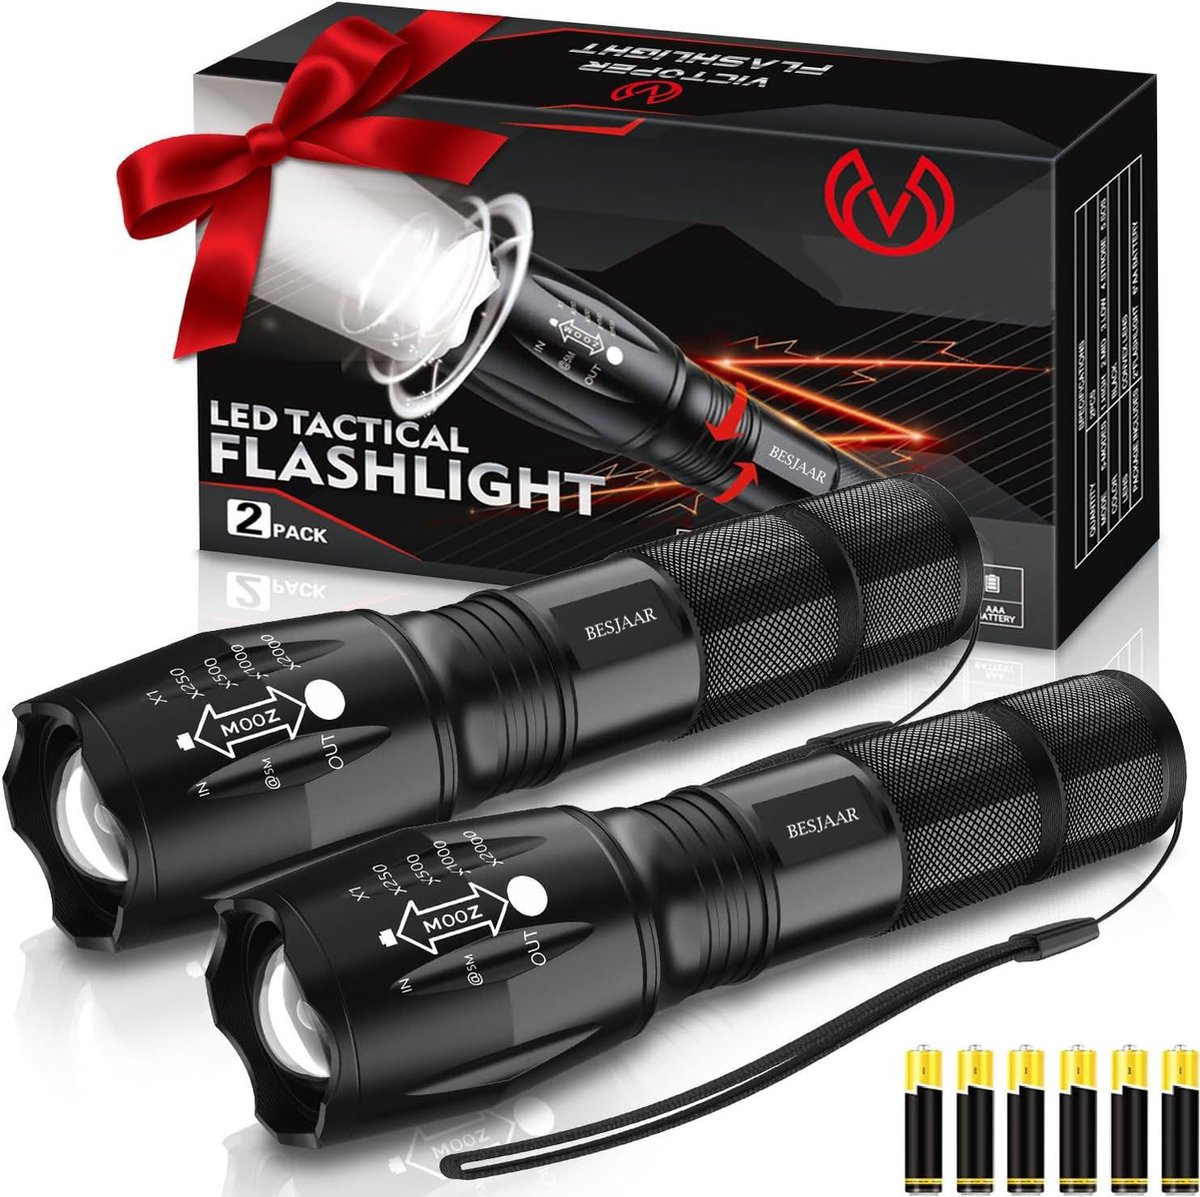 Besjaar Zaklamp - Militaire zaklamp - LED zaklamp - 1000 Lumen - Inzoombaar 2 stuks - incl Alkalinebatterijen - waterproof zaklamp